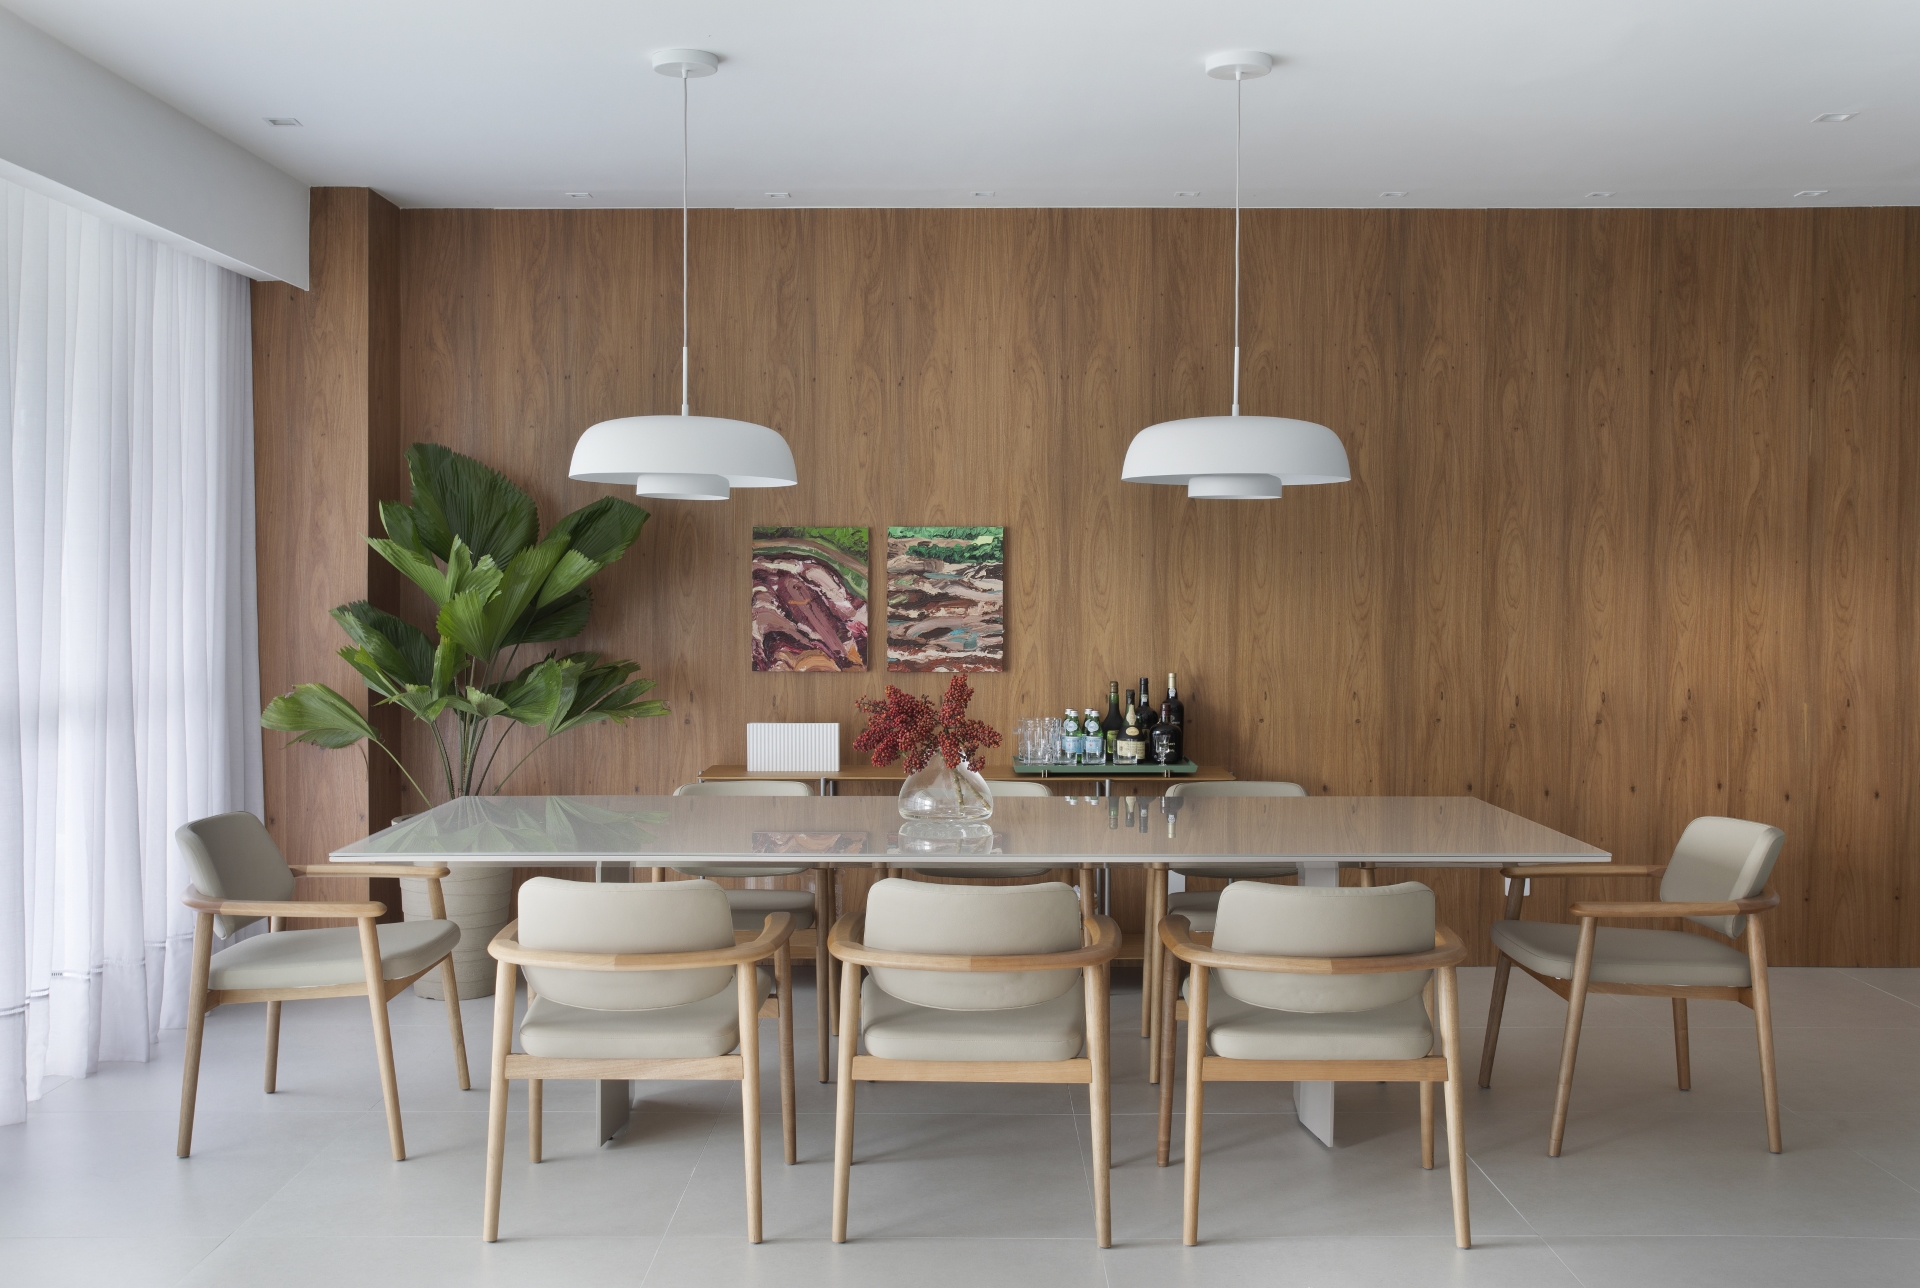 Sala de jantar com mesa em porcelanato, paredes com porcelanato com textura de madeira, dois pendentes, cortinas claras e vaso com planta próximo da parede